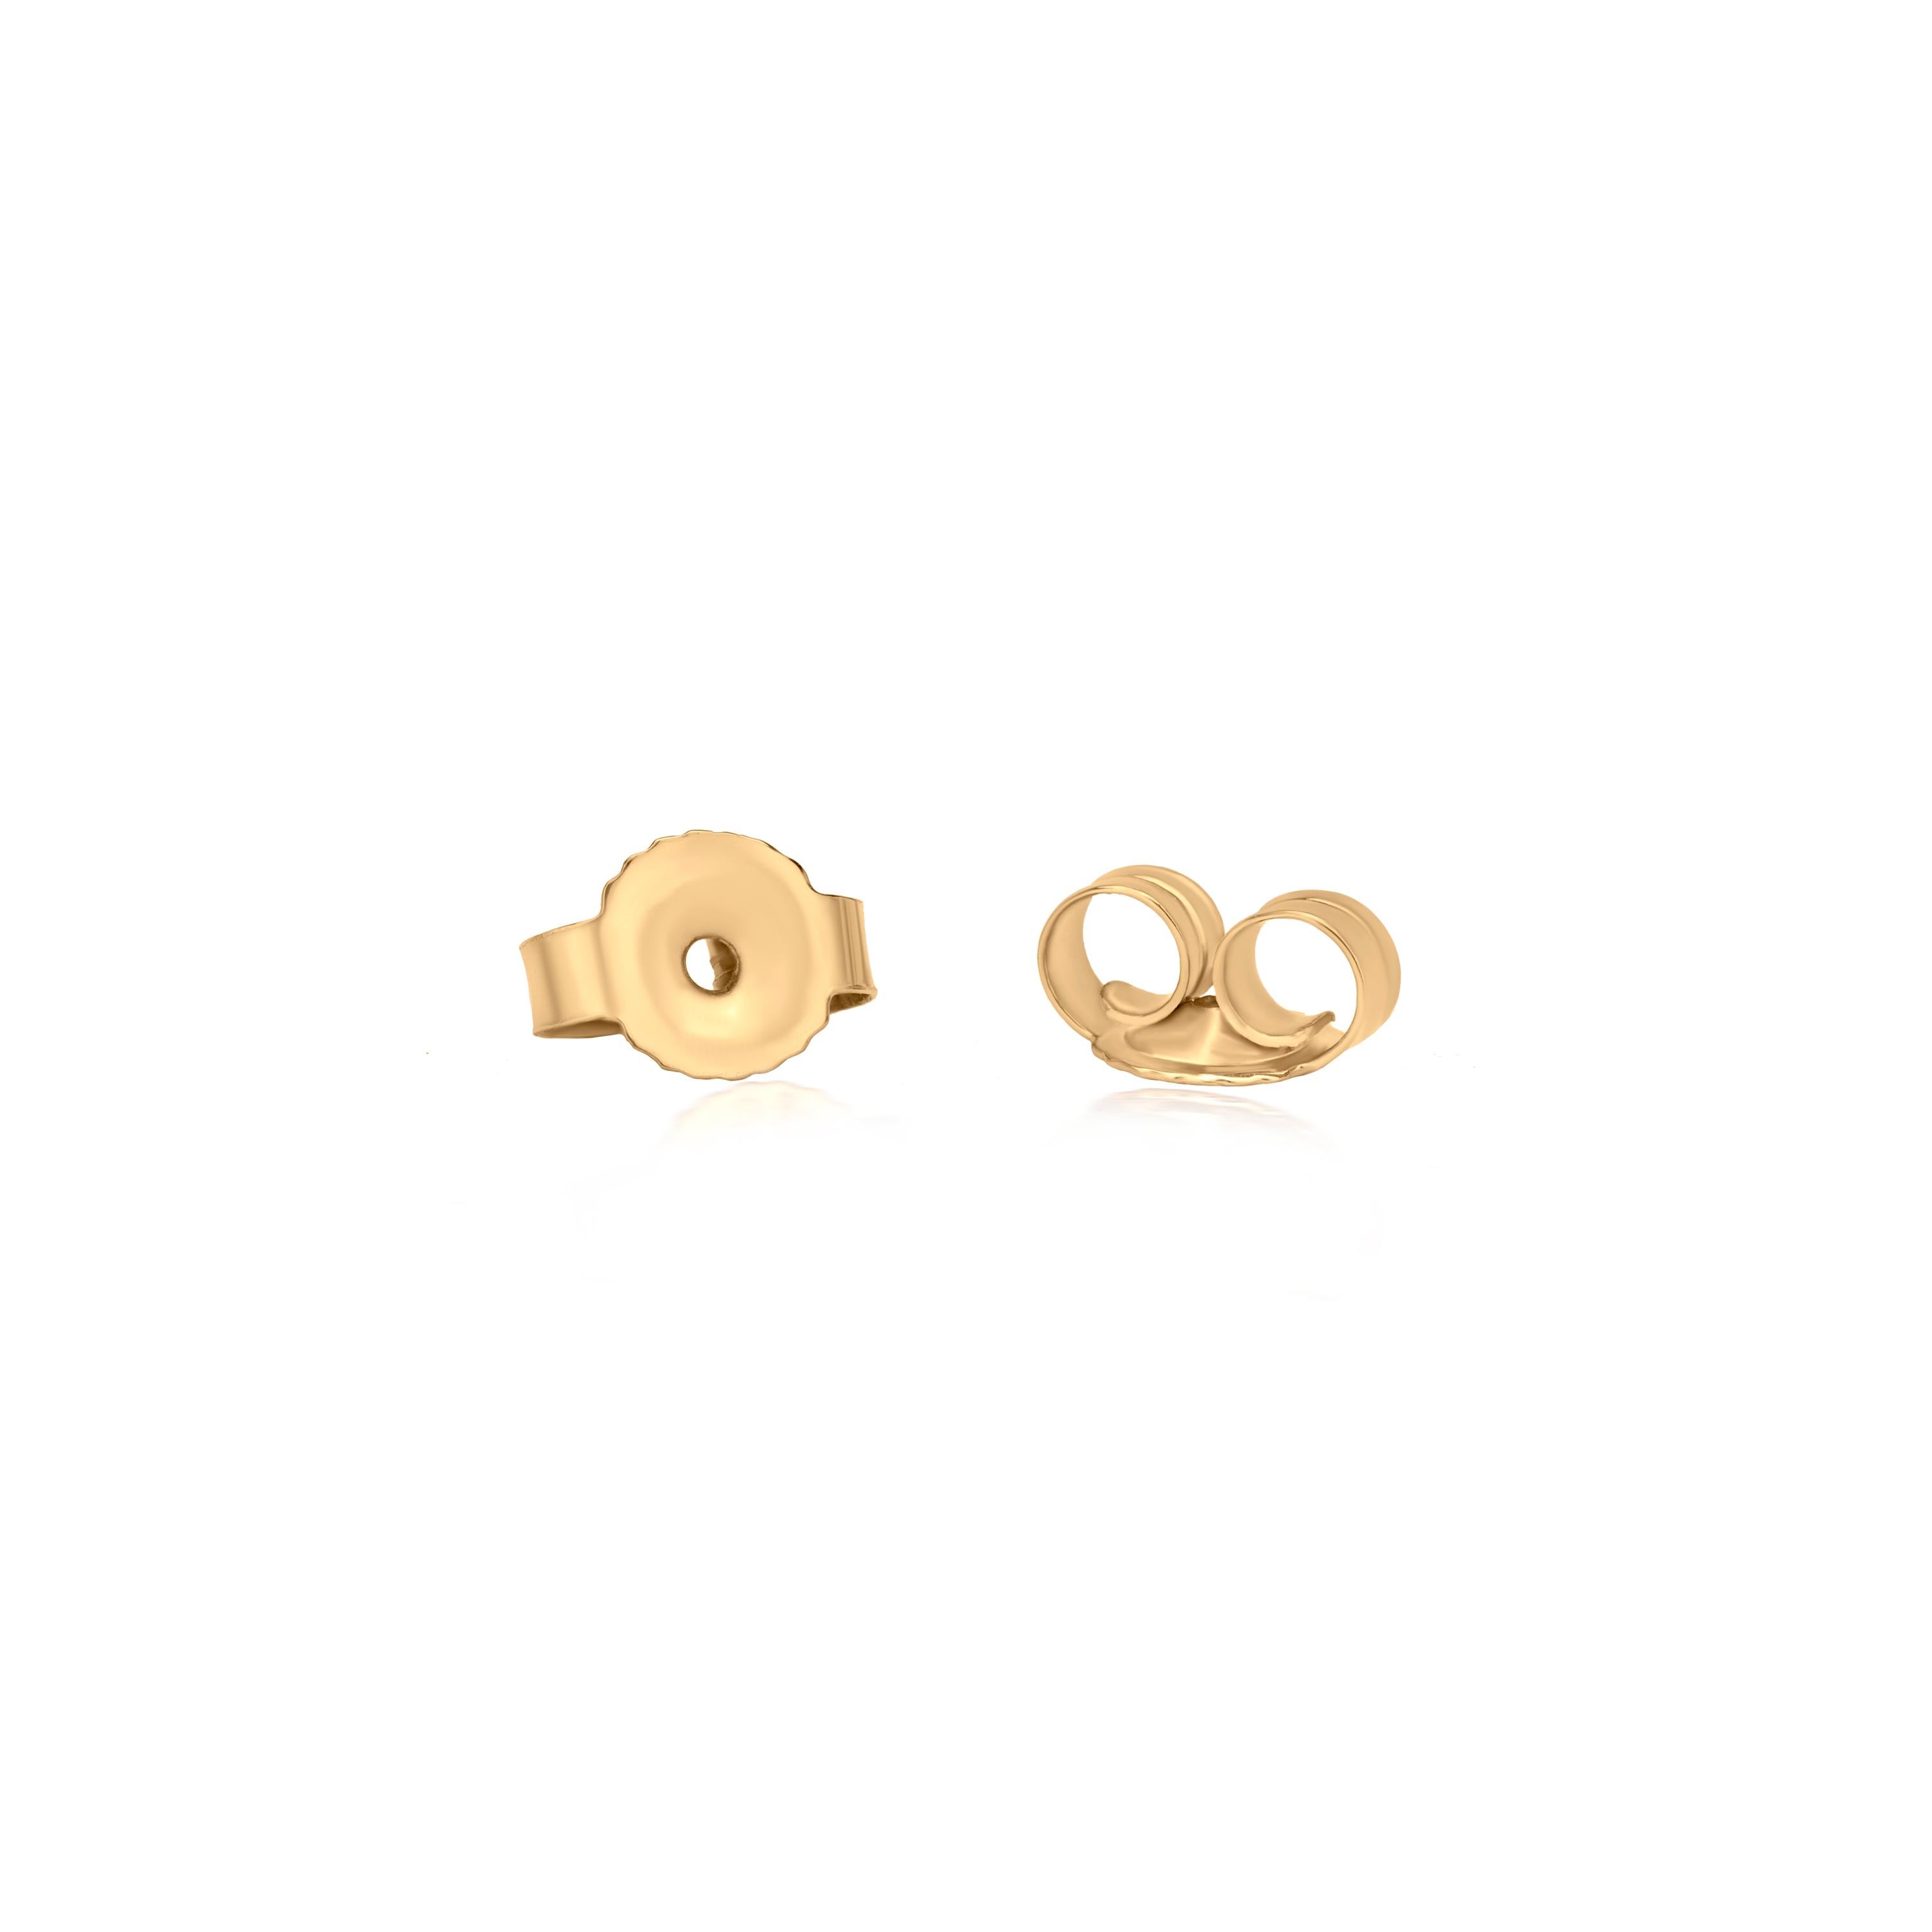 Round Cut Luxle Diamond Bee Stud Earrings in 18k Yellow Gold